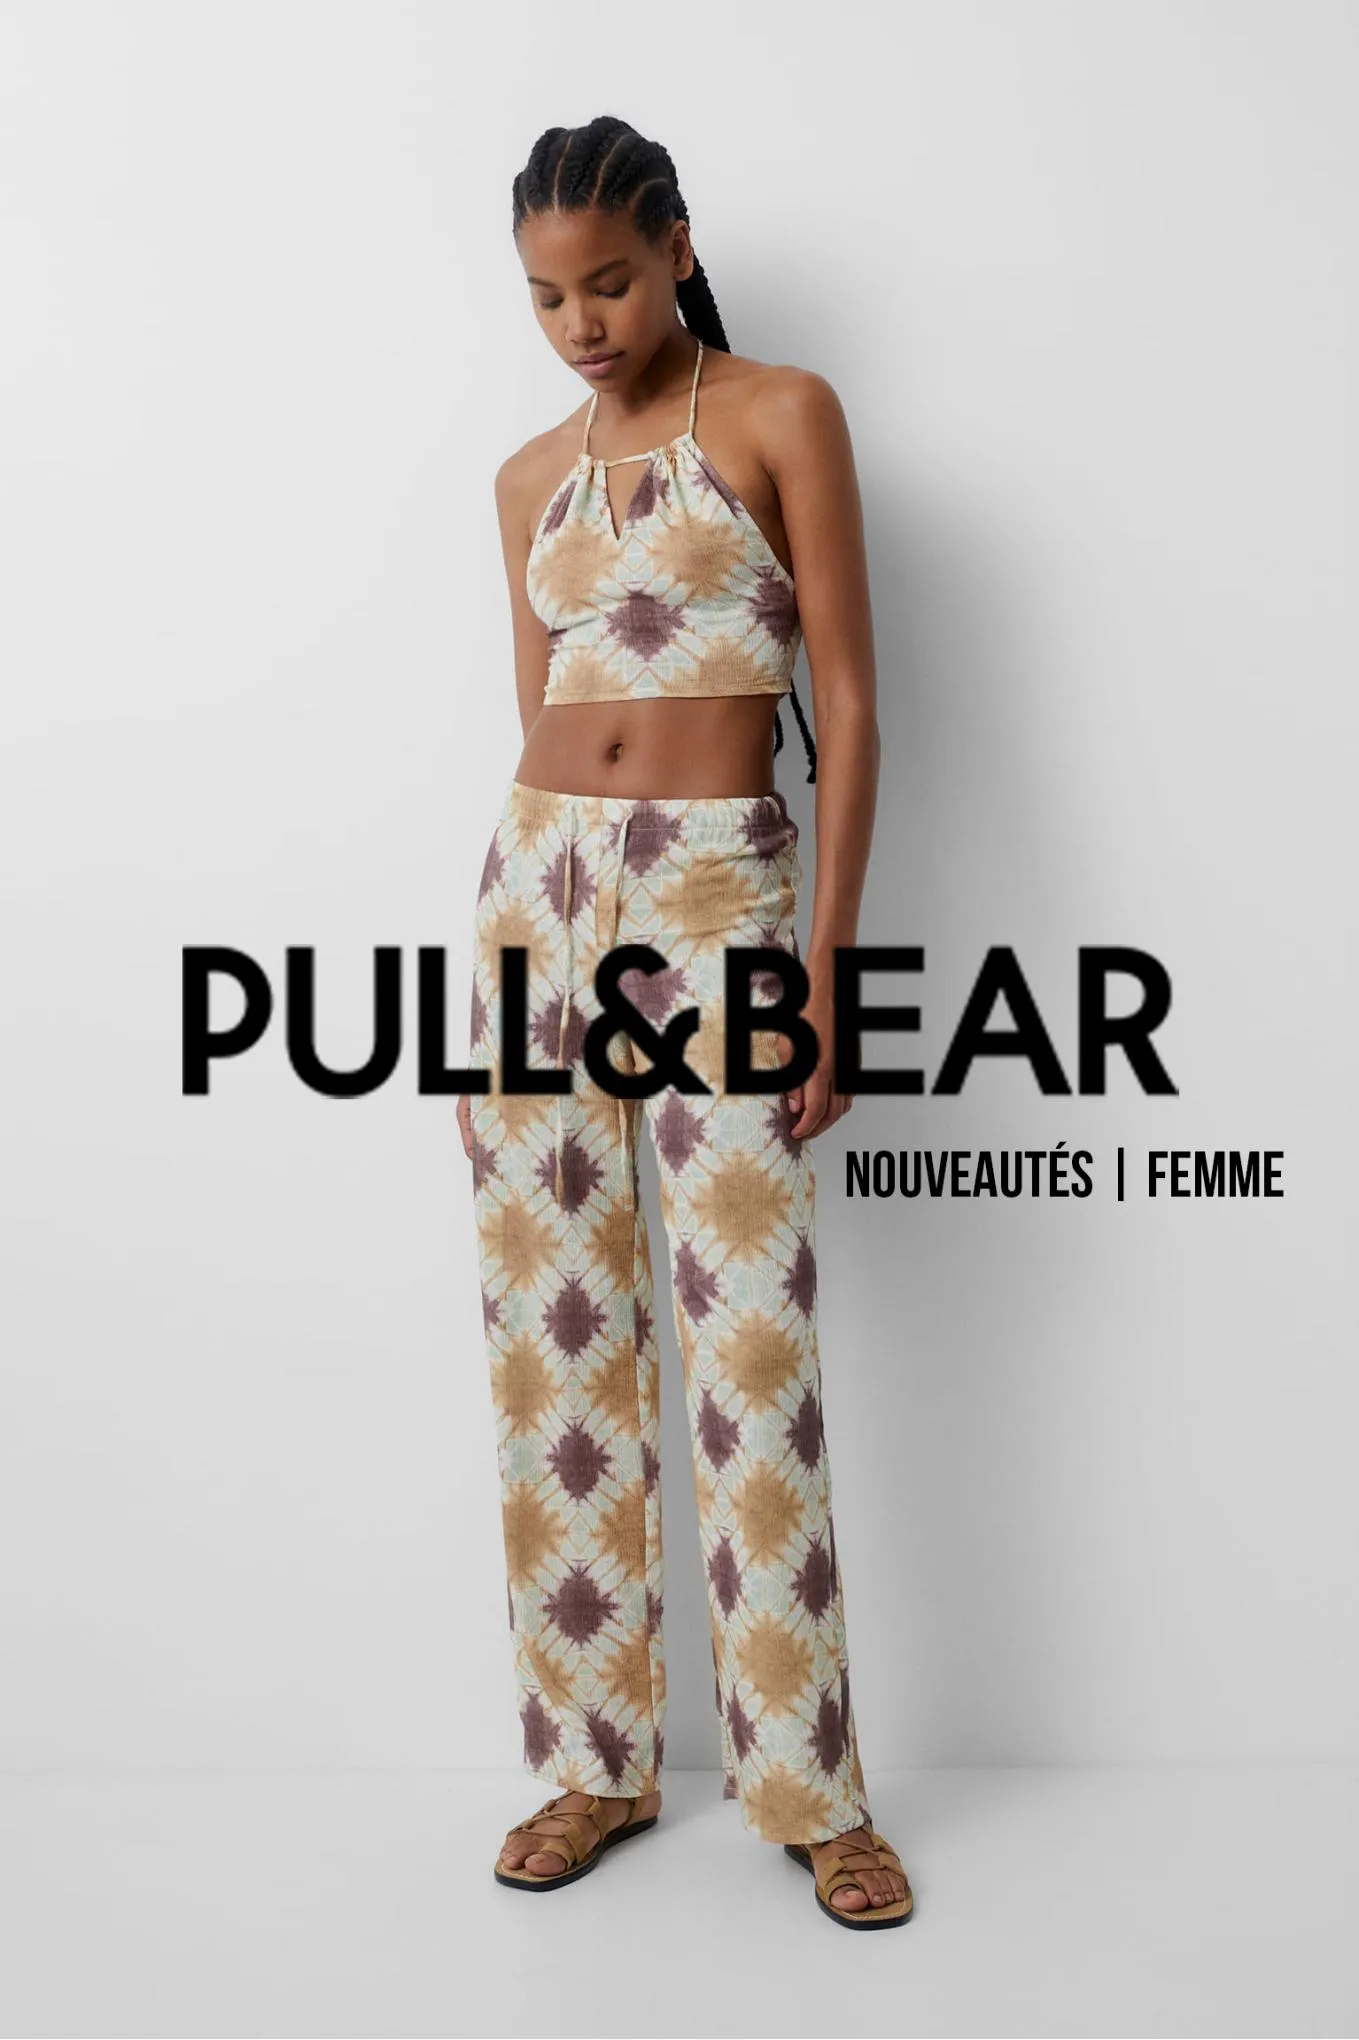 Catalogue Nouveautés | Femme, page 00001